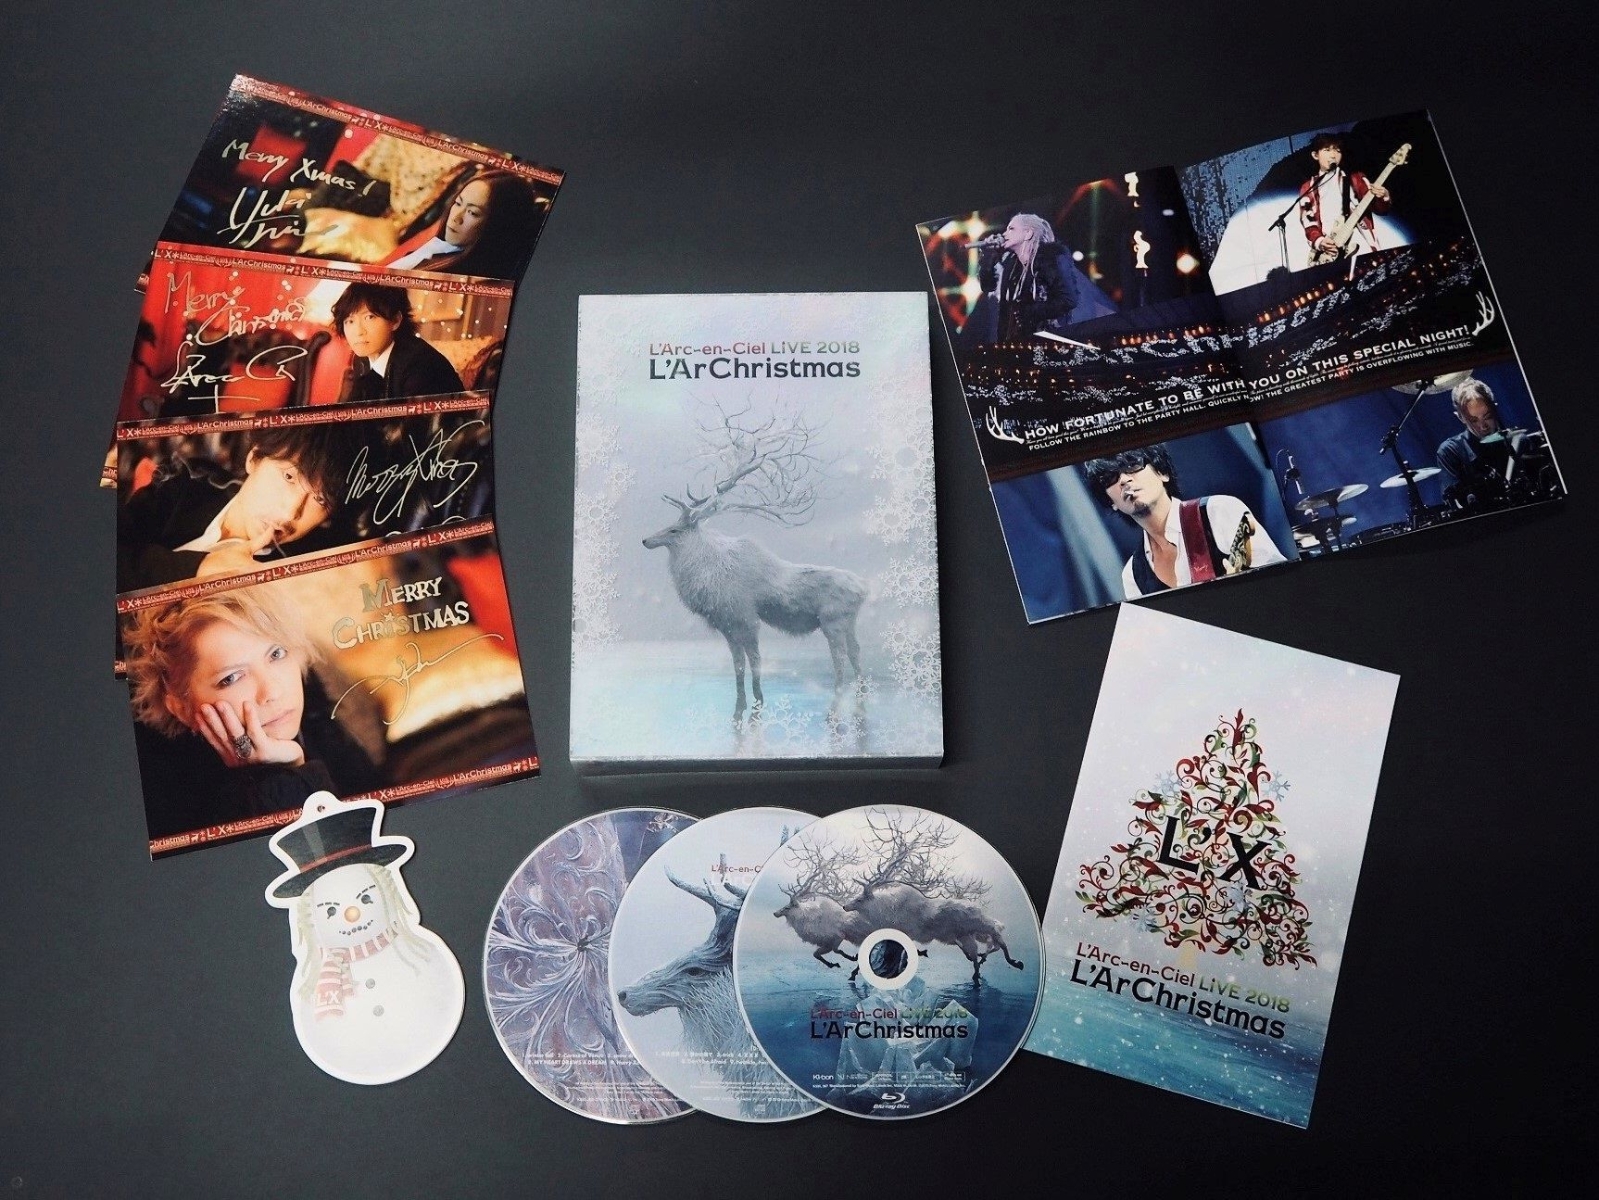 ブックス Live 18 L Archristmas Blu Ray初回生産限定盤 Blu Ray L Arc En Ciel Dvd